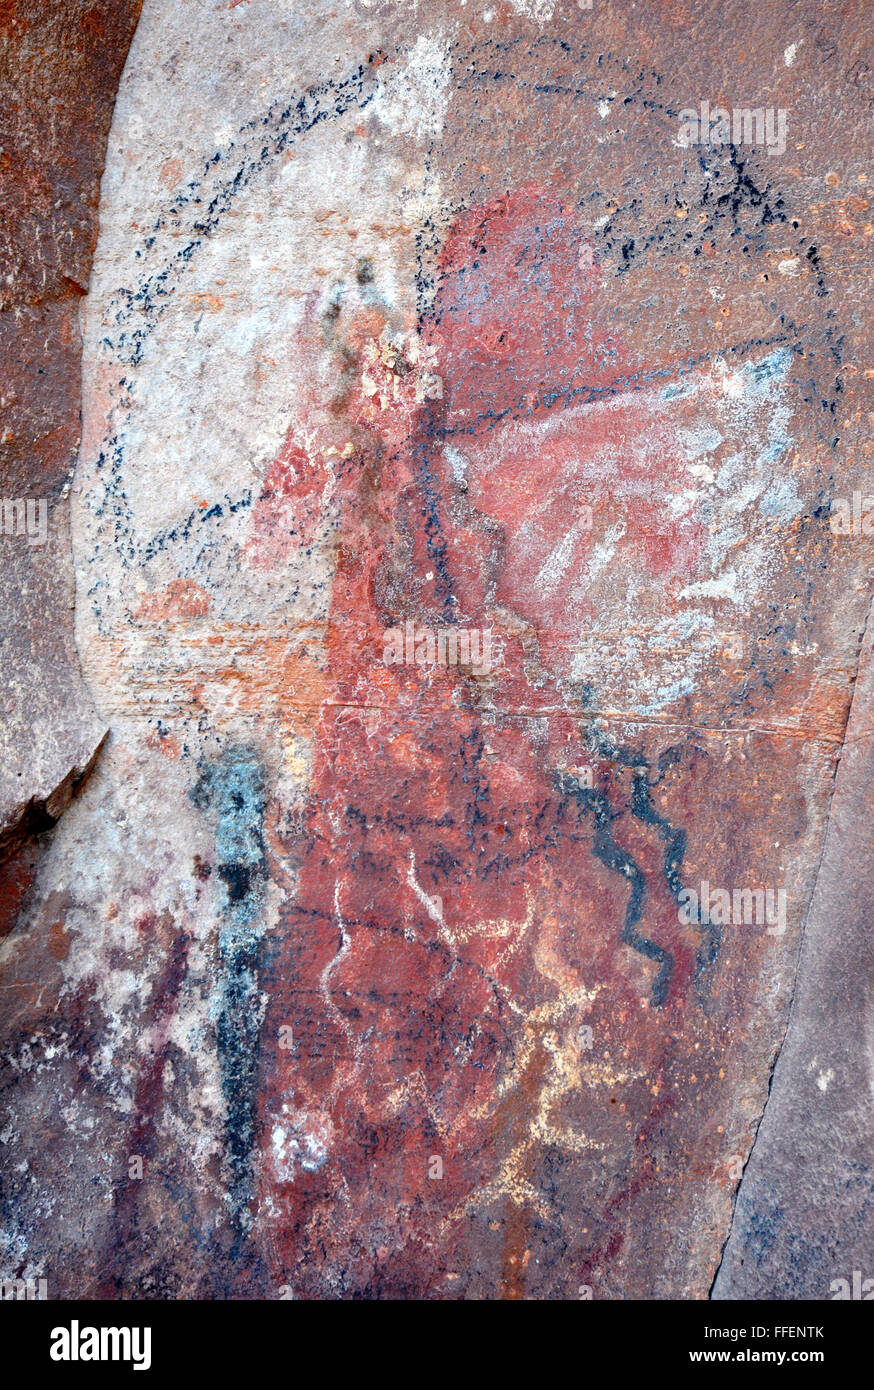 Native American pictografías y petroglifos sobre una roca tallada o pintar imágenes, arte rupestre prehistórico por los indios anasazi. Foto de stock